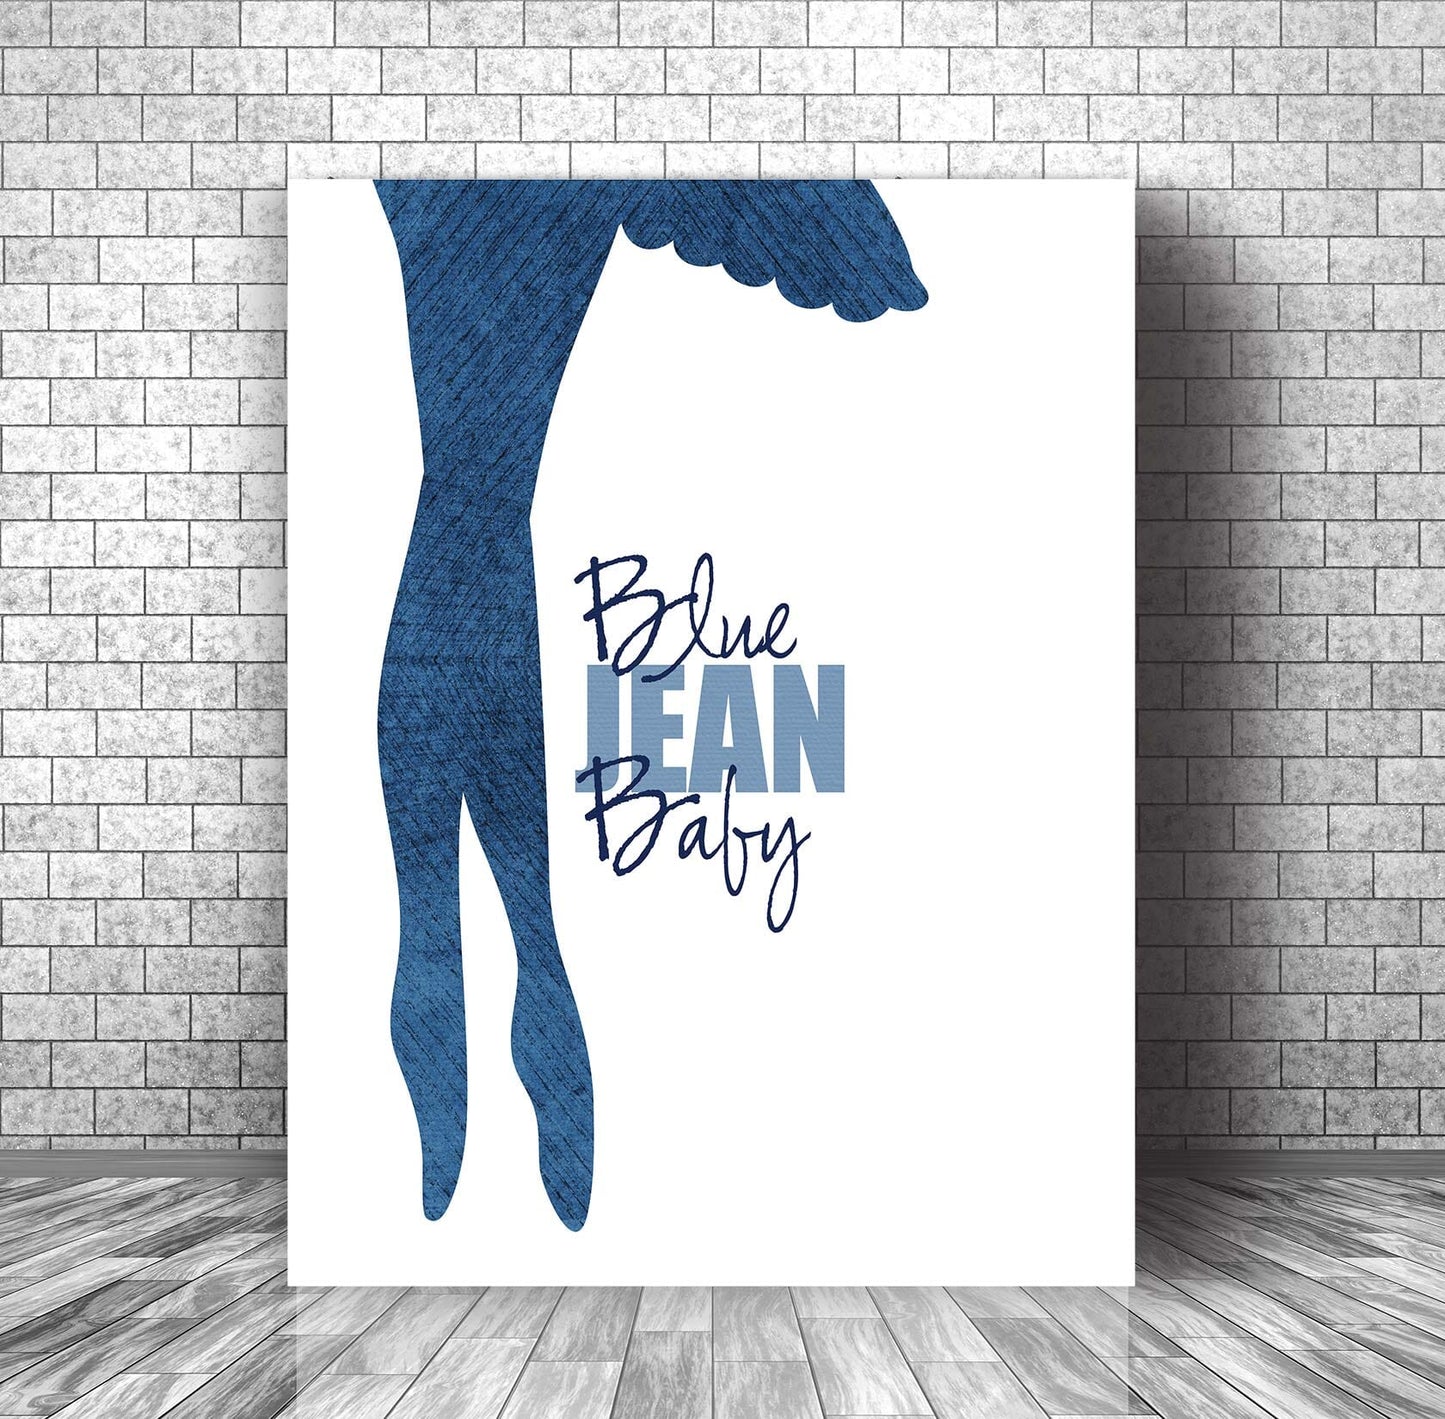 Tiny Dancer by Elton John - Classic Rock Lyric Art Print Poster Song Lyrics Art Song Lyrics Art 11x14 Canvas Wrap 